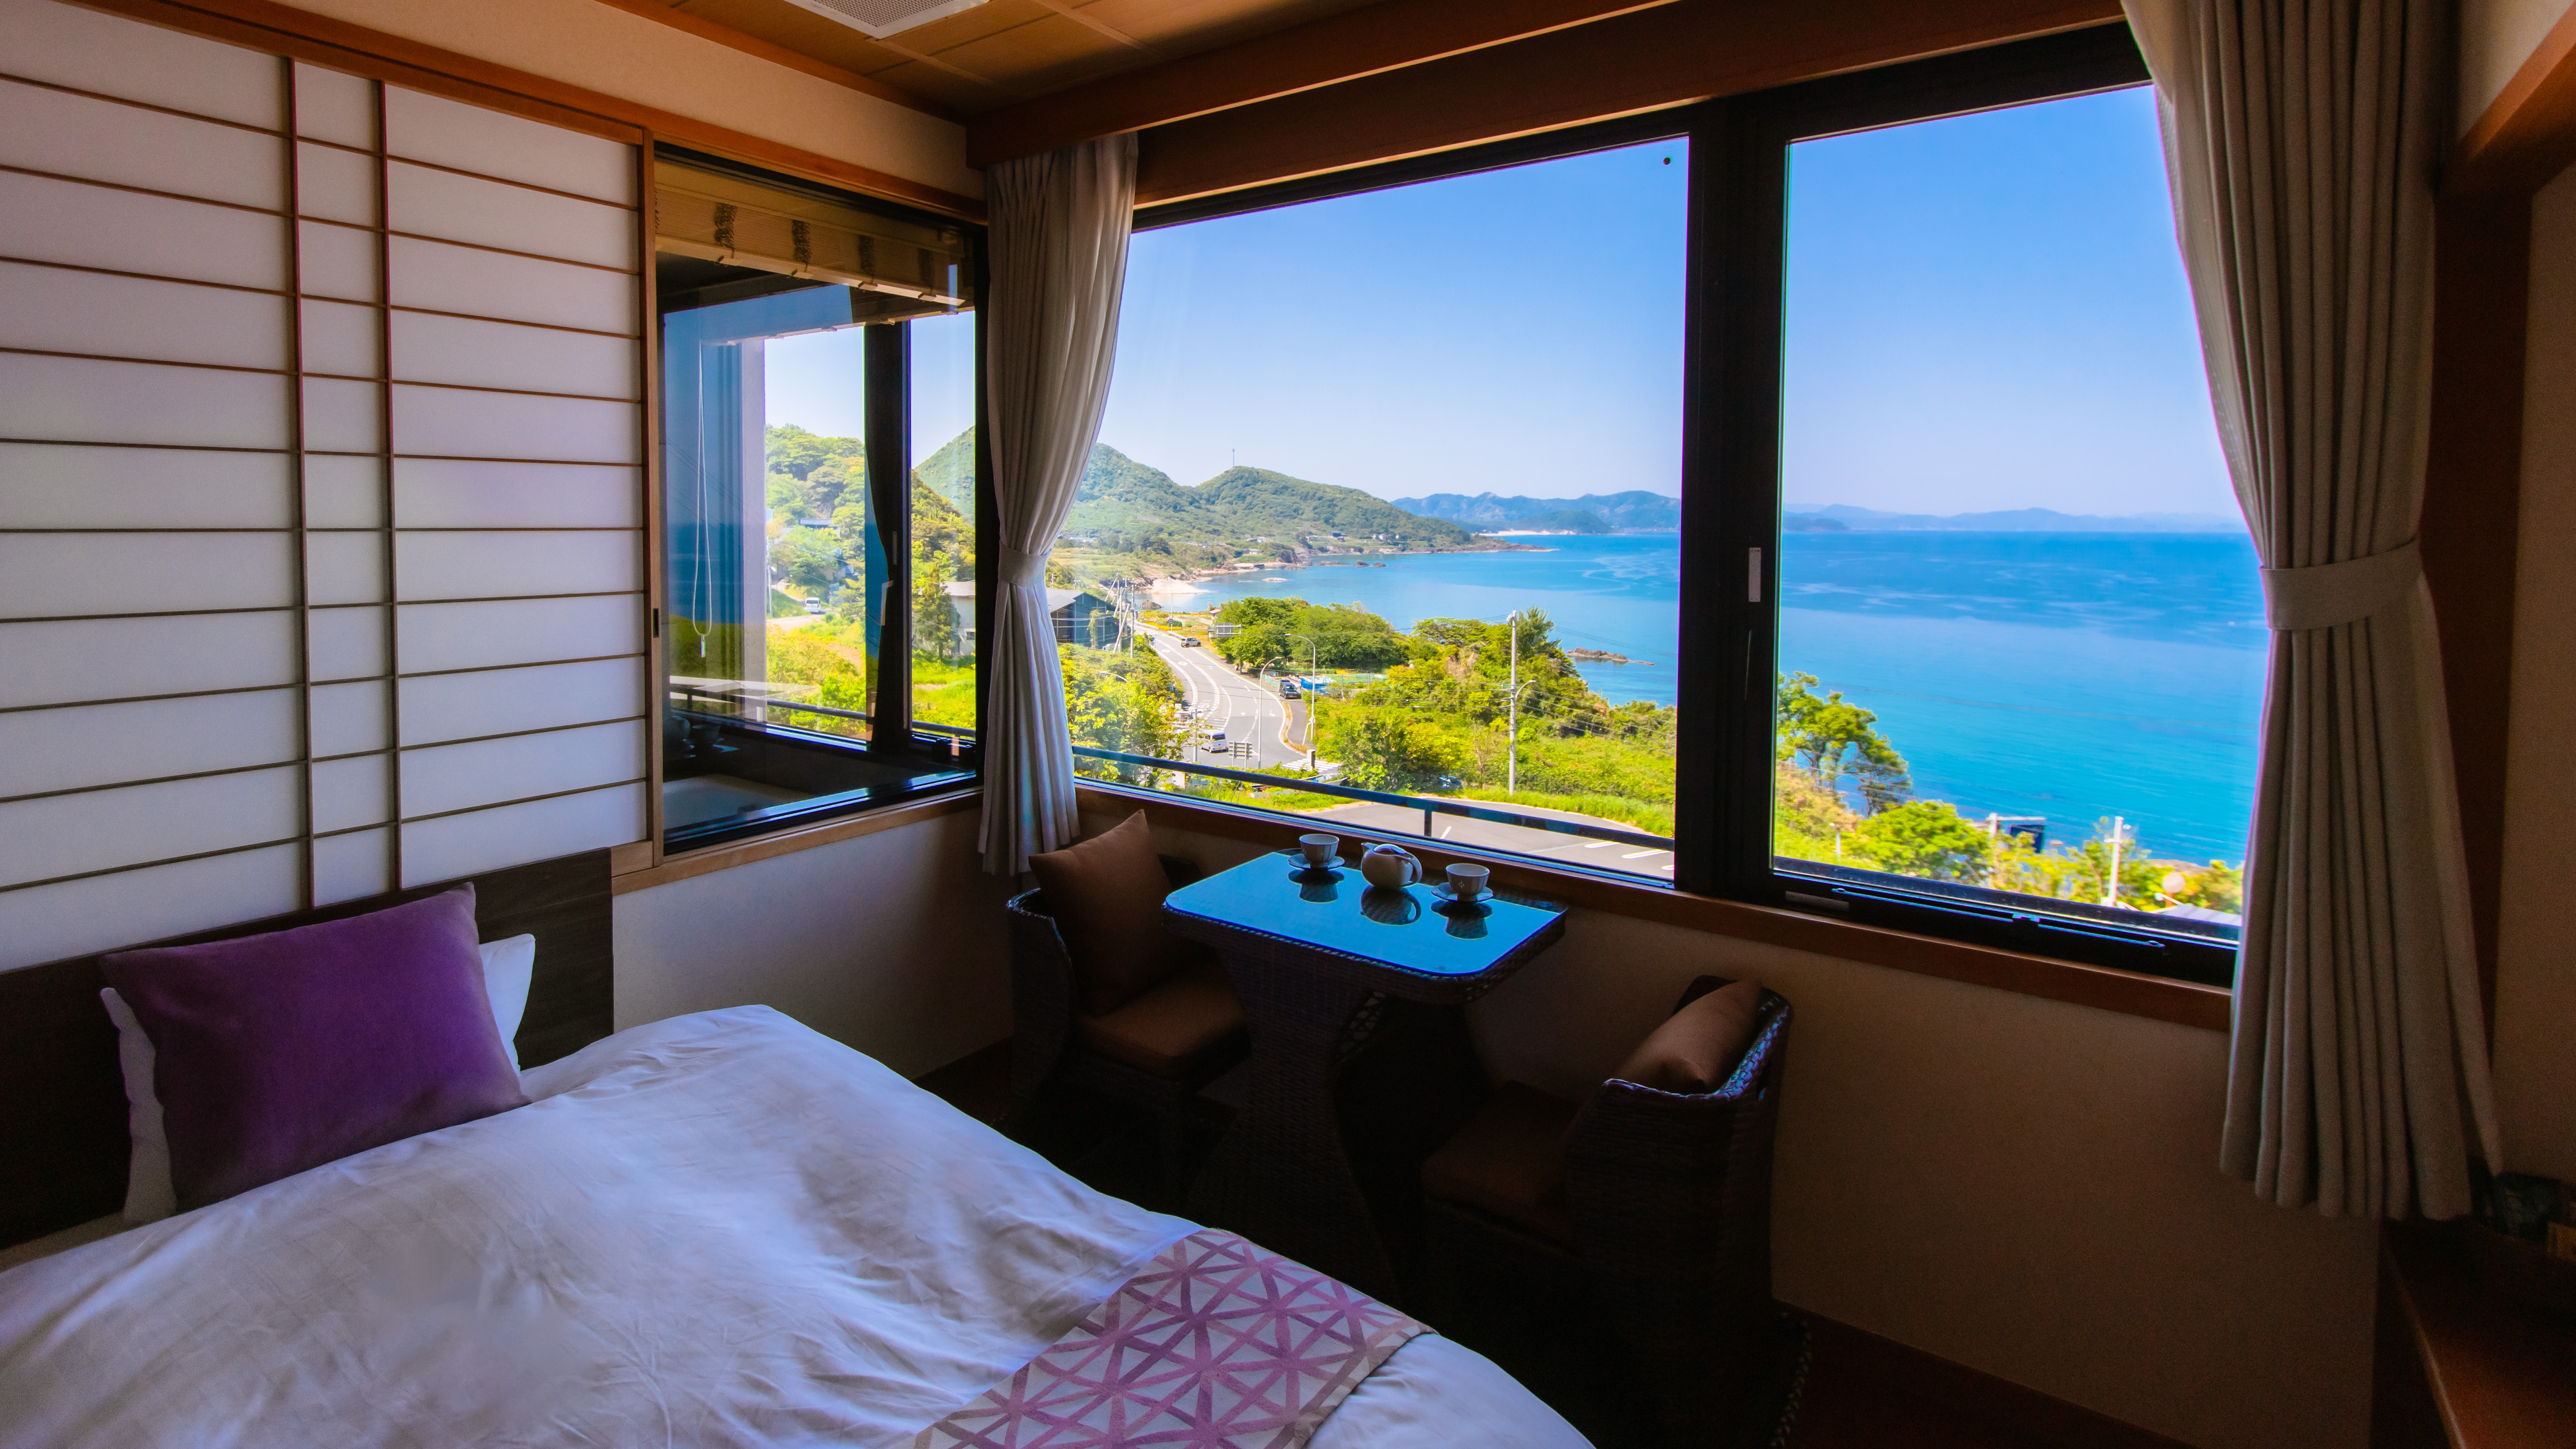 【客室からの眺望】全室オーシャンビューの当館の客室からは美しい真っ青な日本海が一望できます。